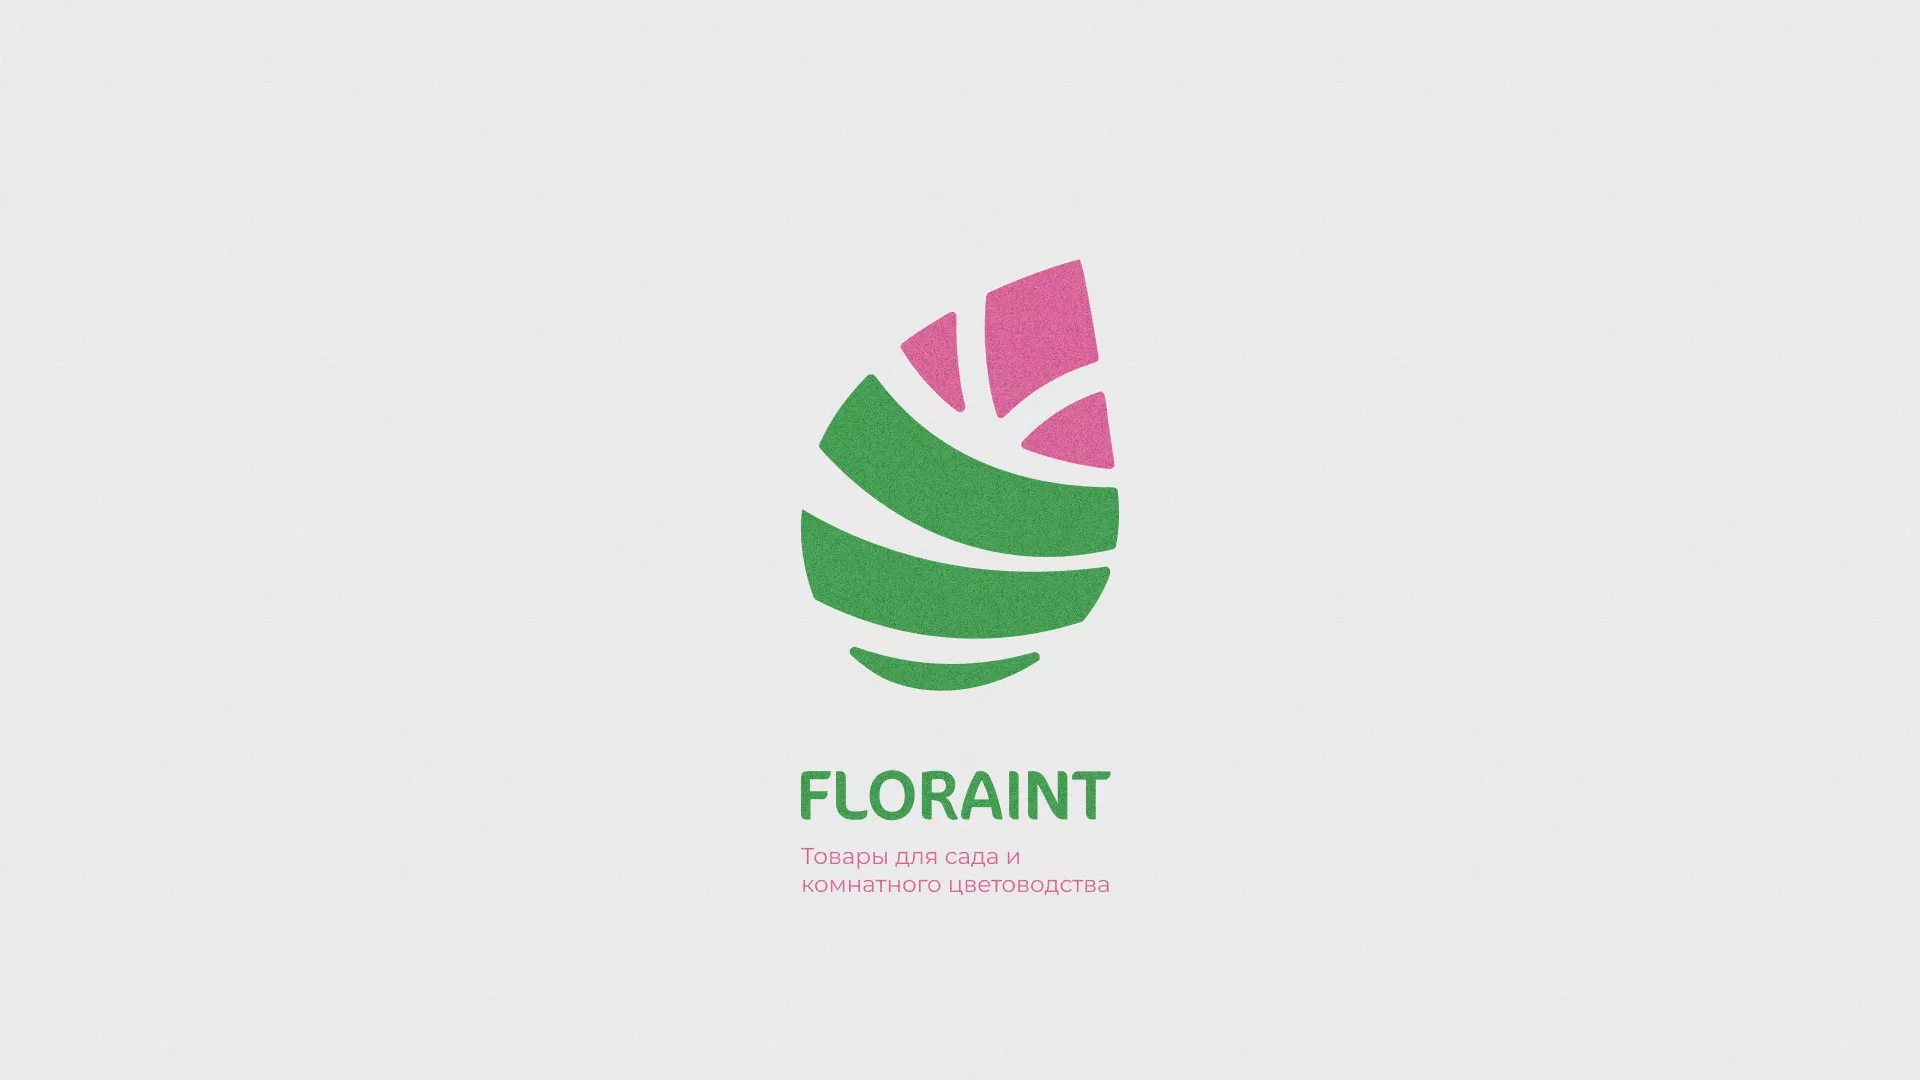 Разработка оформления профиля Instagram для магазина «Floraint» в Осташкове